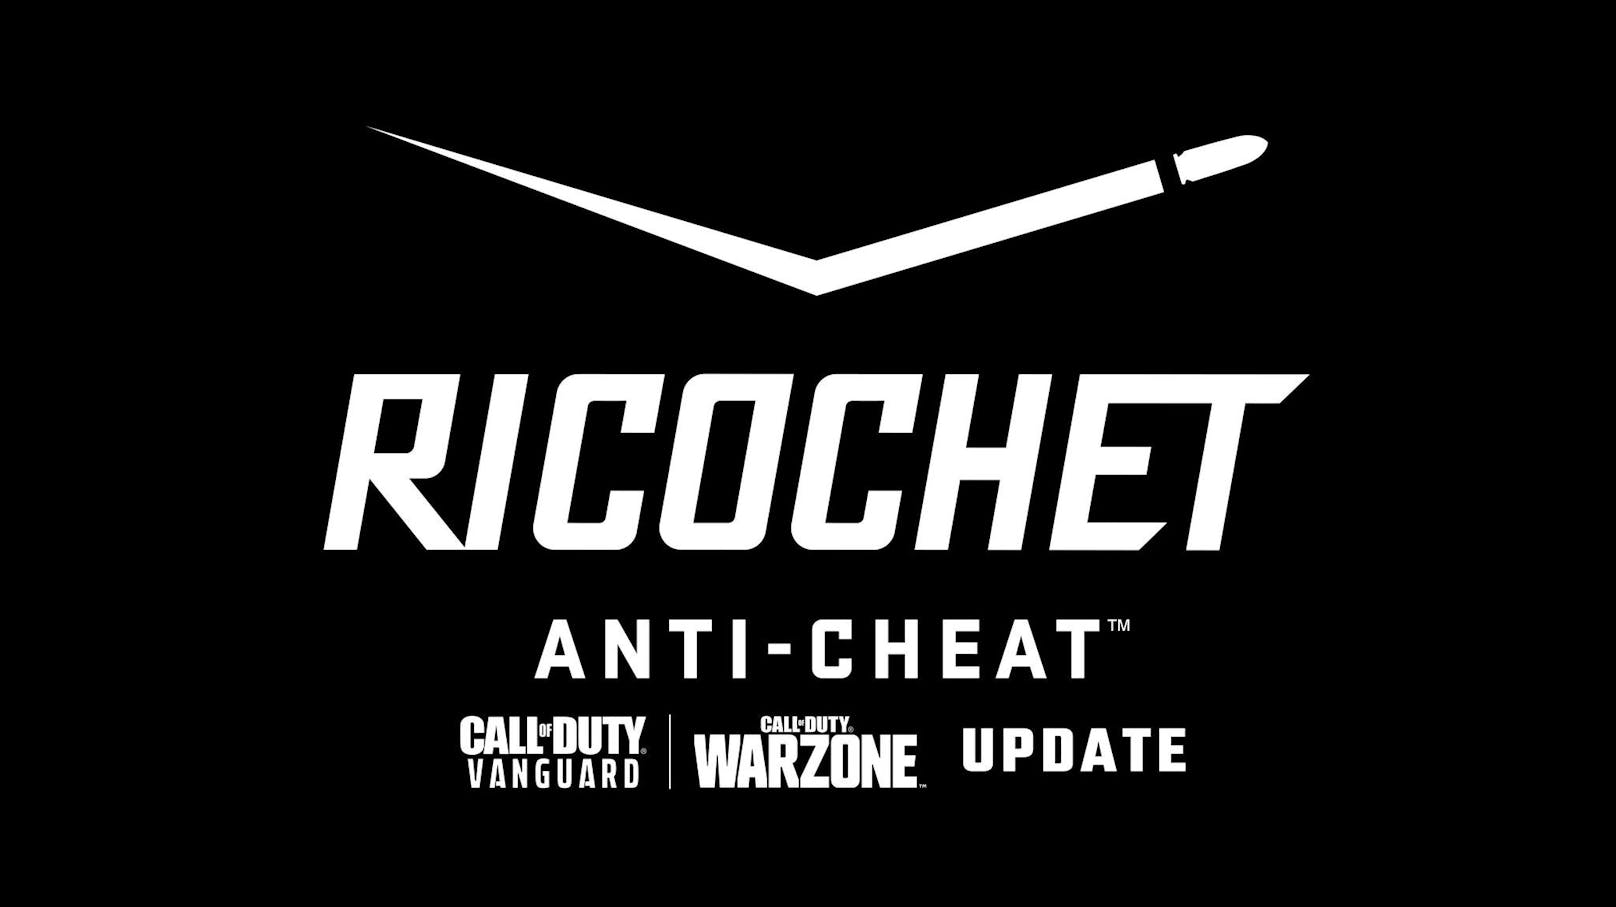 Ricochet ist die Anti-Cheat-Software, die die Spieler und Spielerinnen gebannt hat. Die Software lernt mit künstlicher Intelligenz dazu und macht es den Cheatern und Cheaterinnen schwieriger.